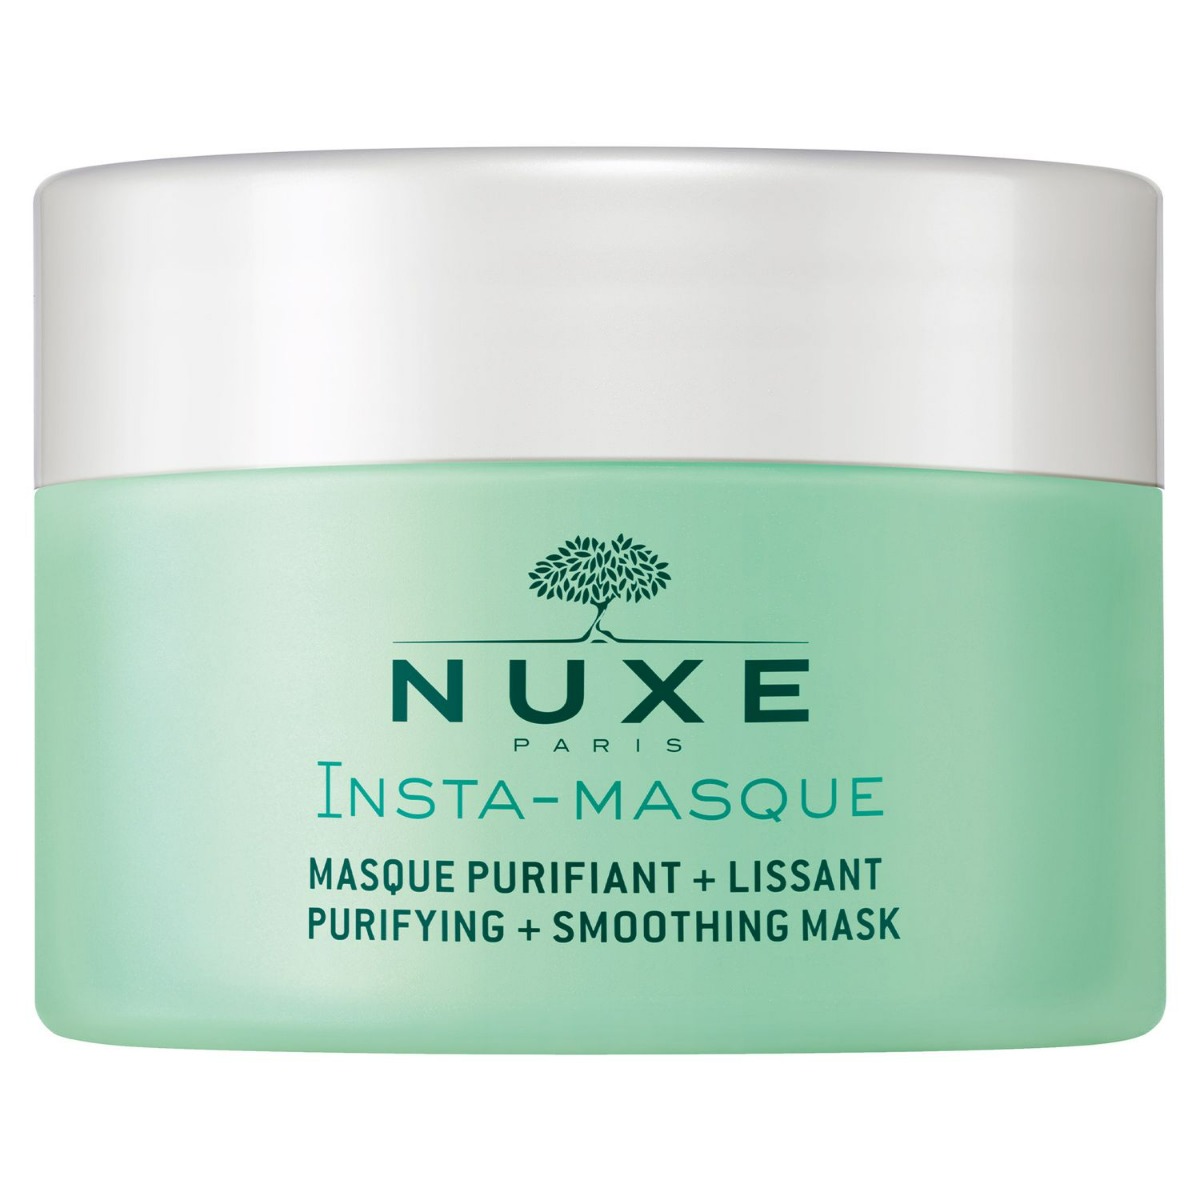 Nuxe Insta Masque oczyszczająca maska wygładzająca skórę 50 ml